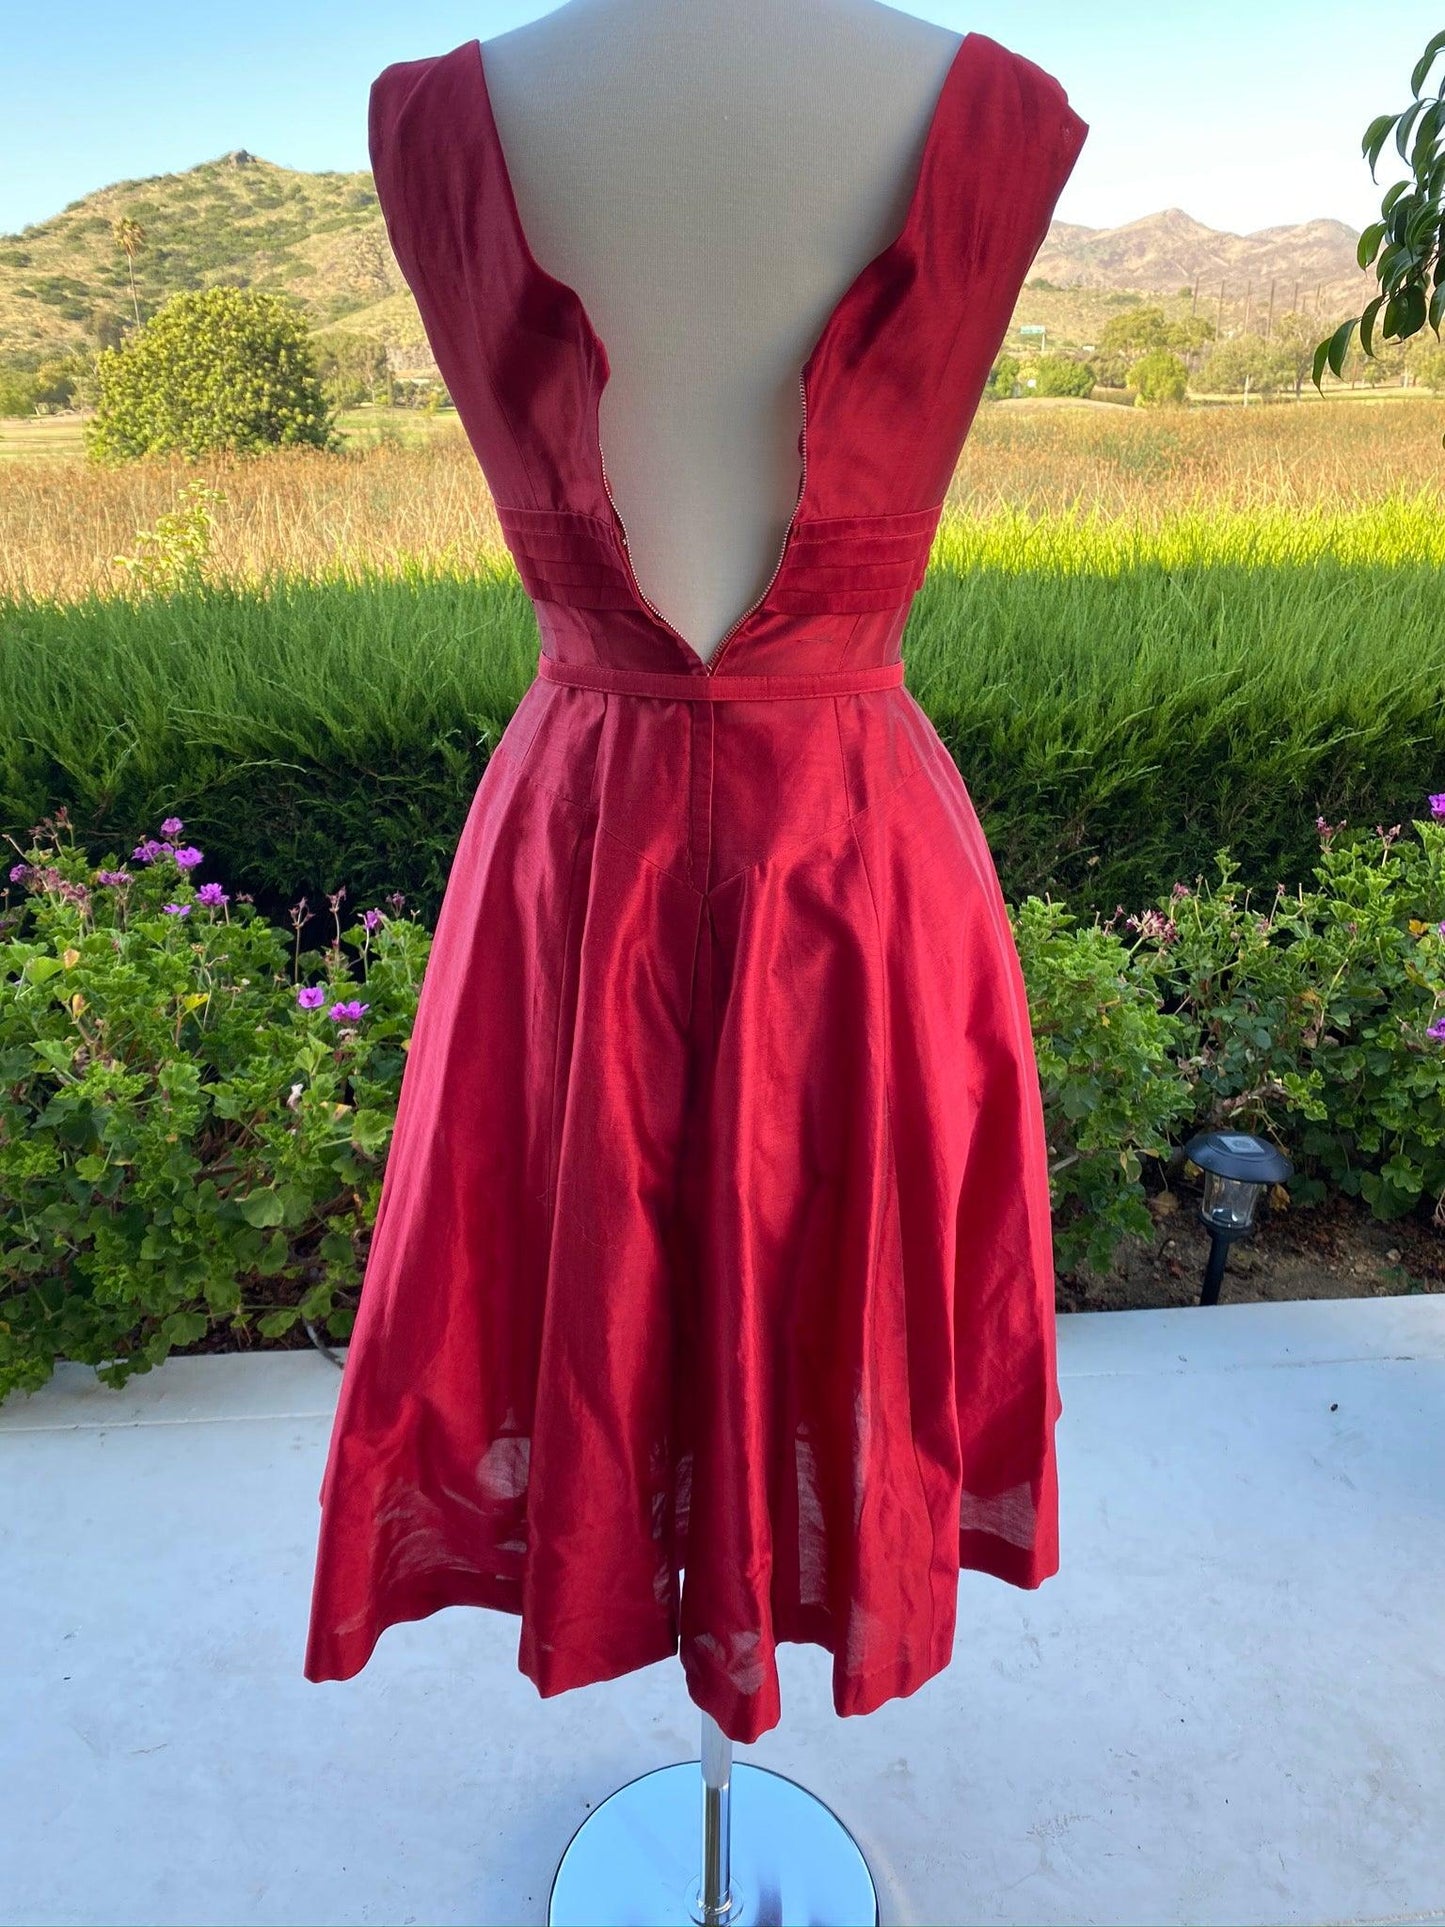 REd vintage prom dress back